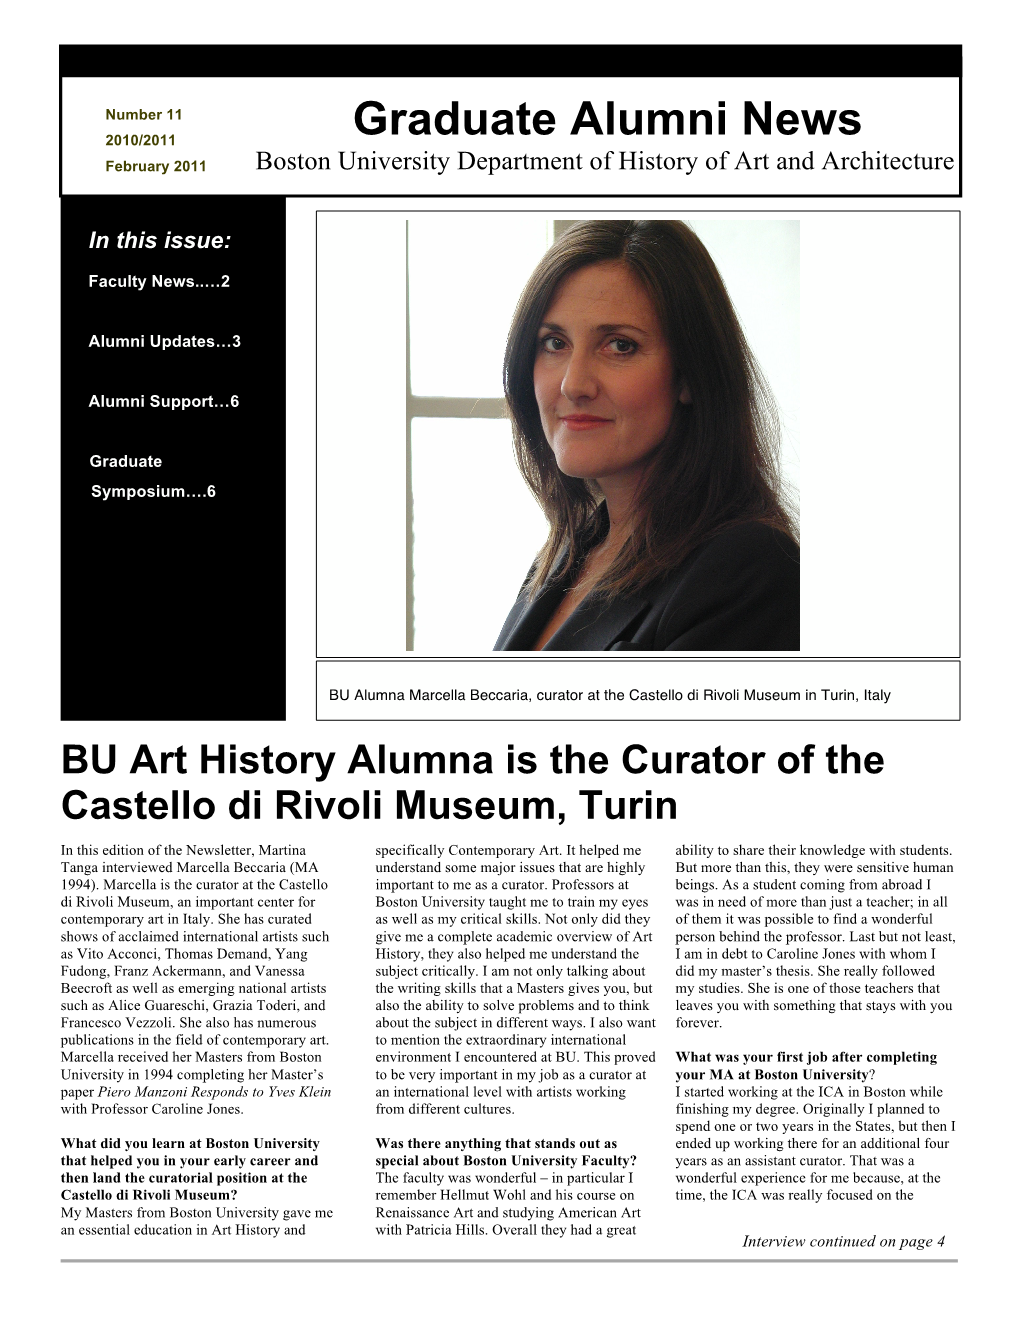 2010-2011 Alumni Newsletter